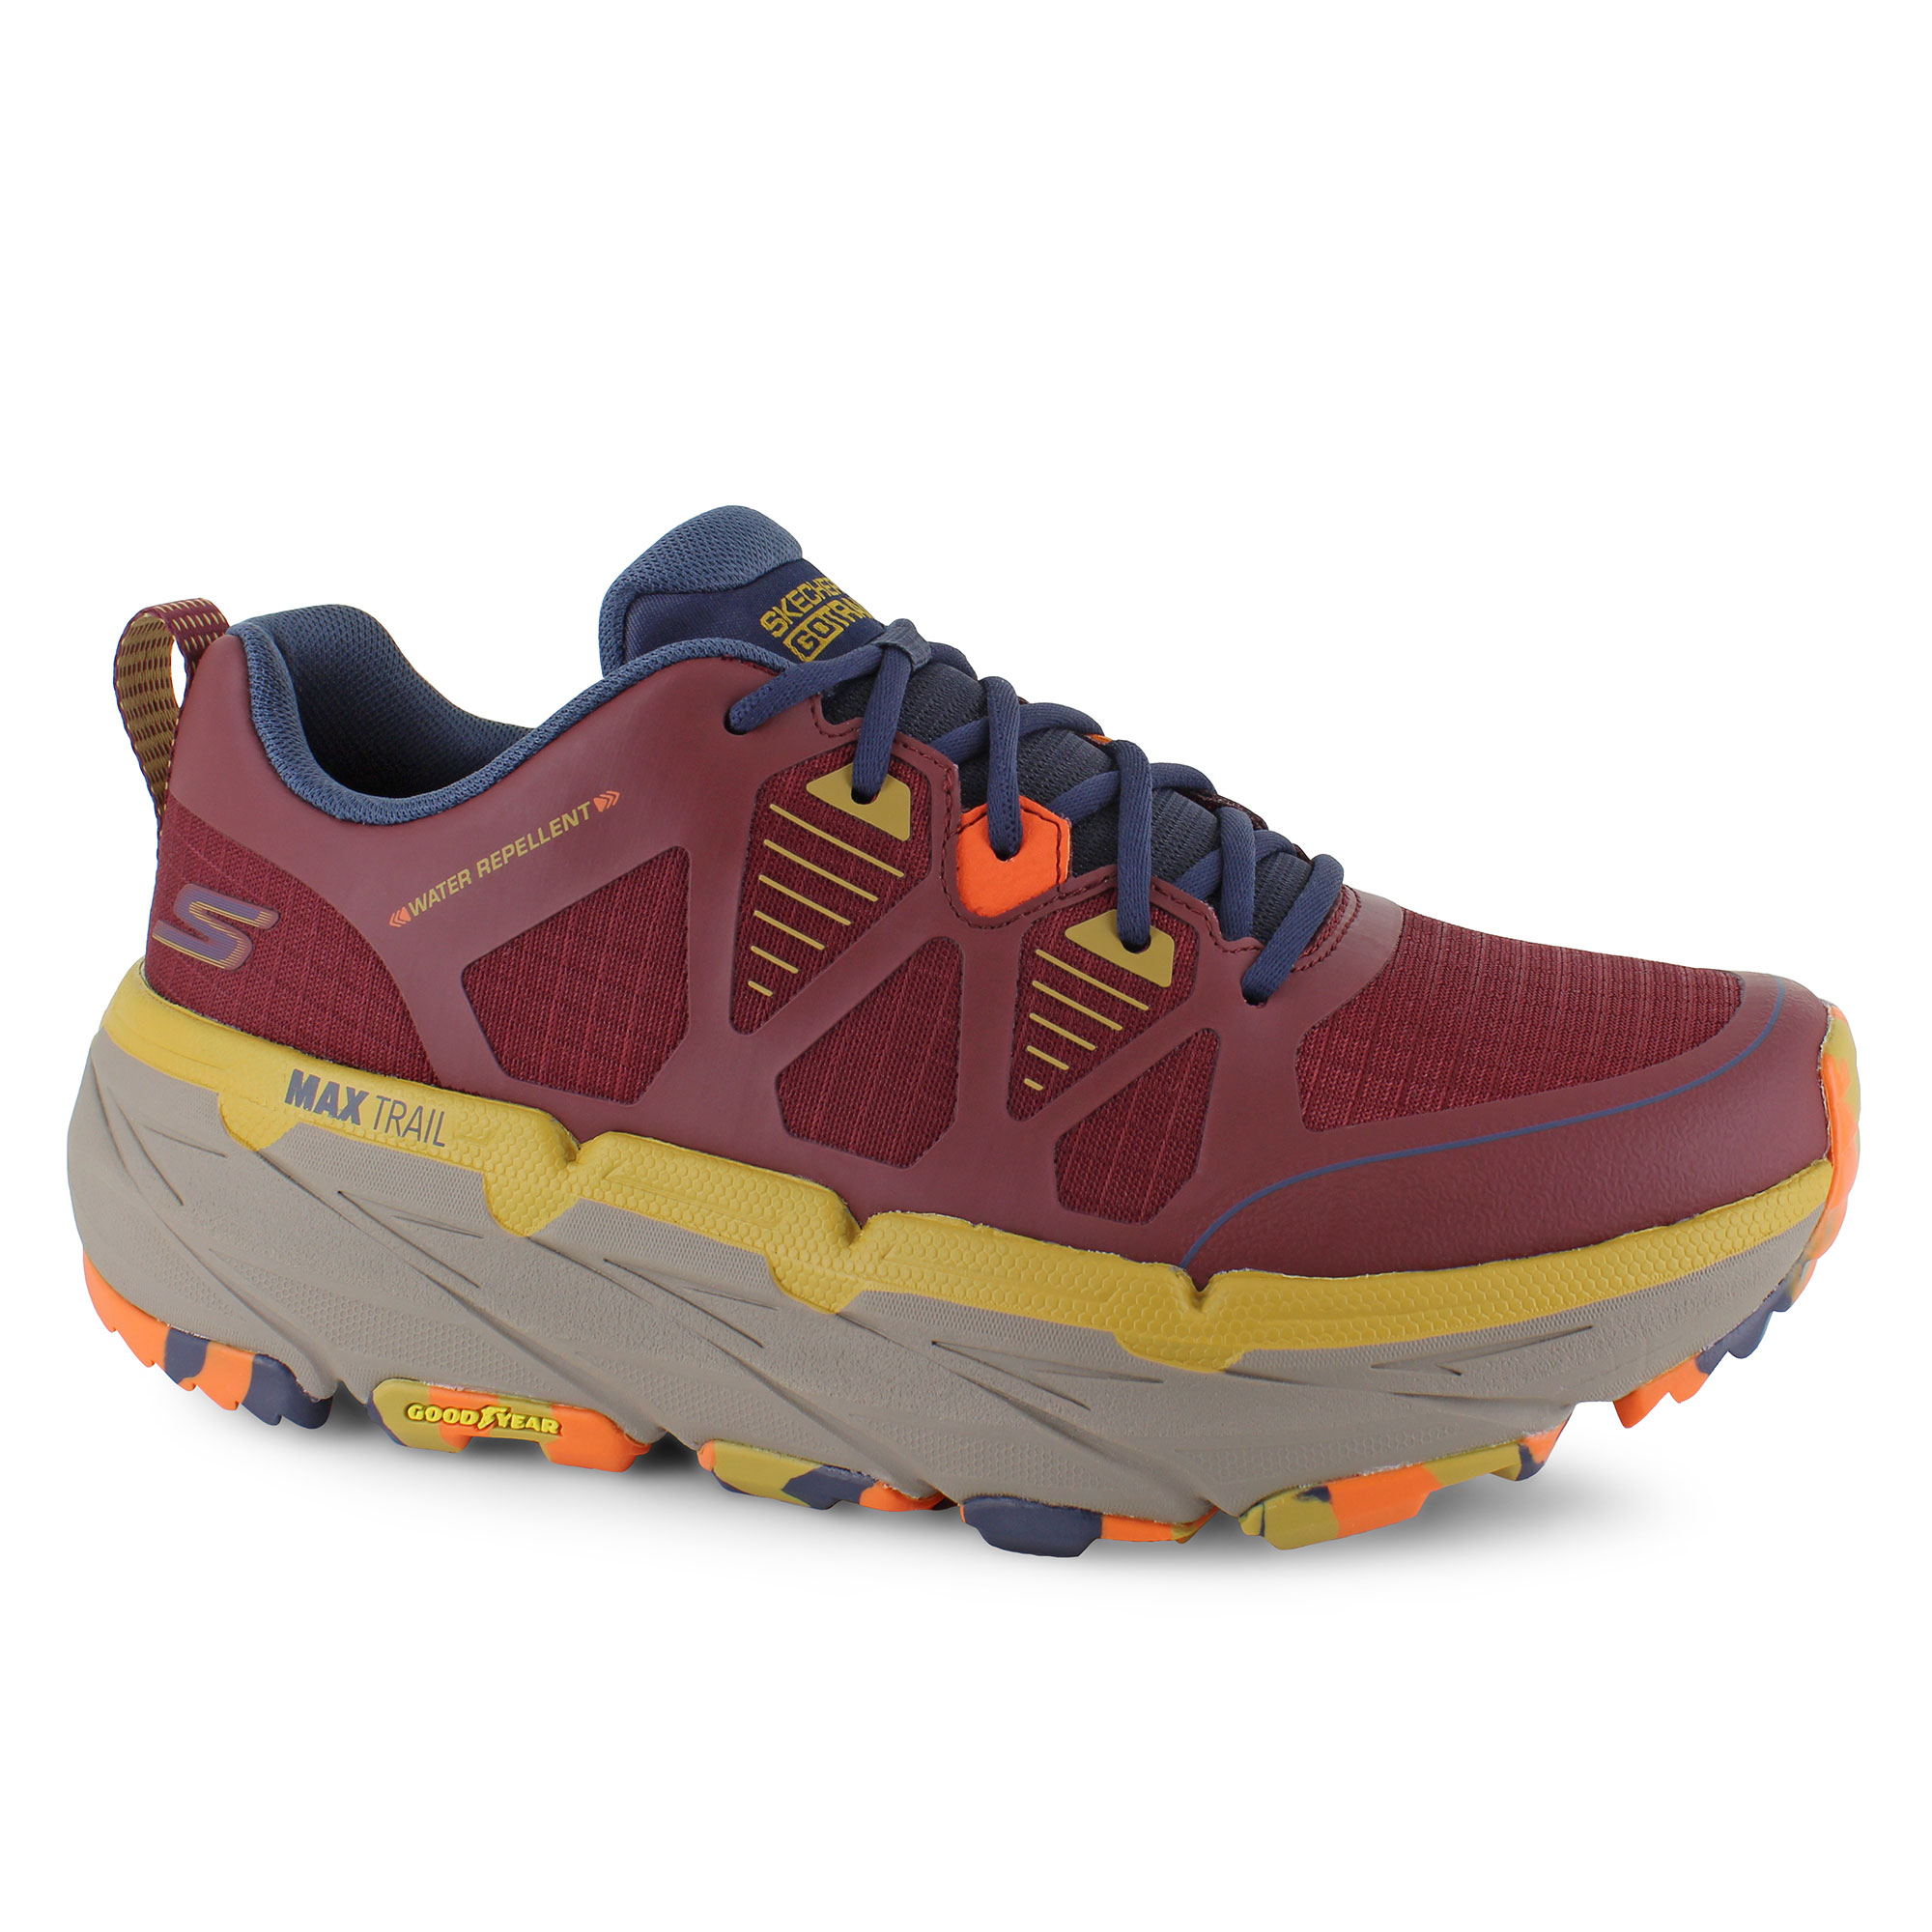 Men's Outdoor & Trail Athletic Shoes | Shop Now at SHOE DEPT. ENCORE